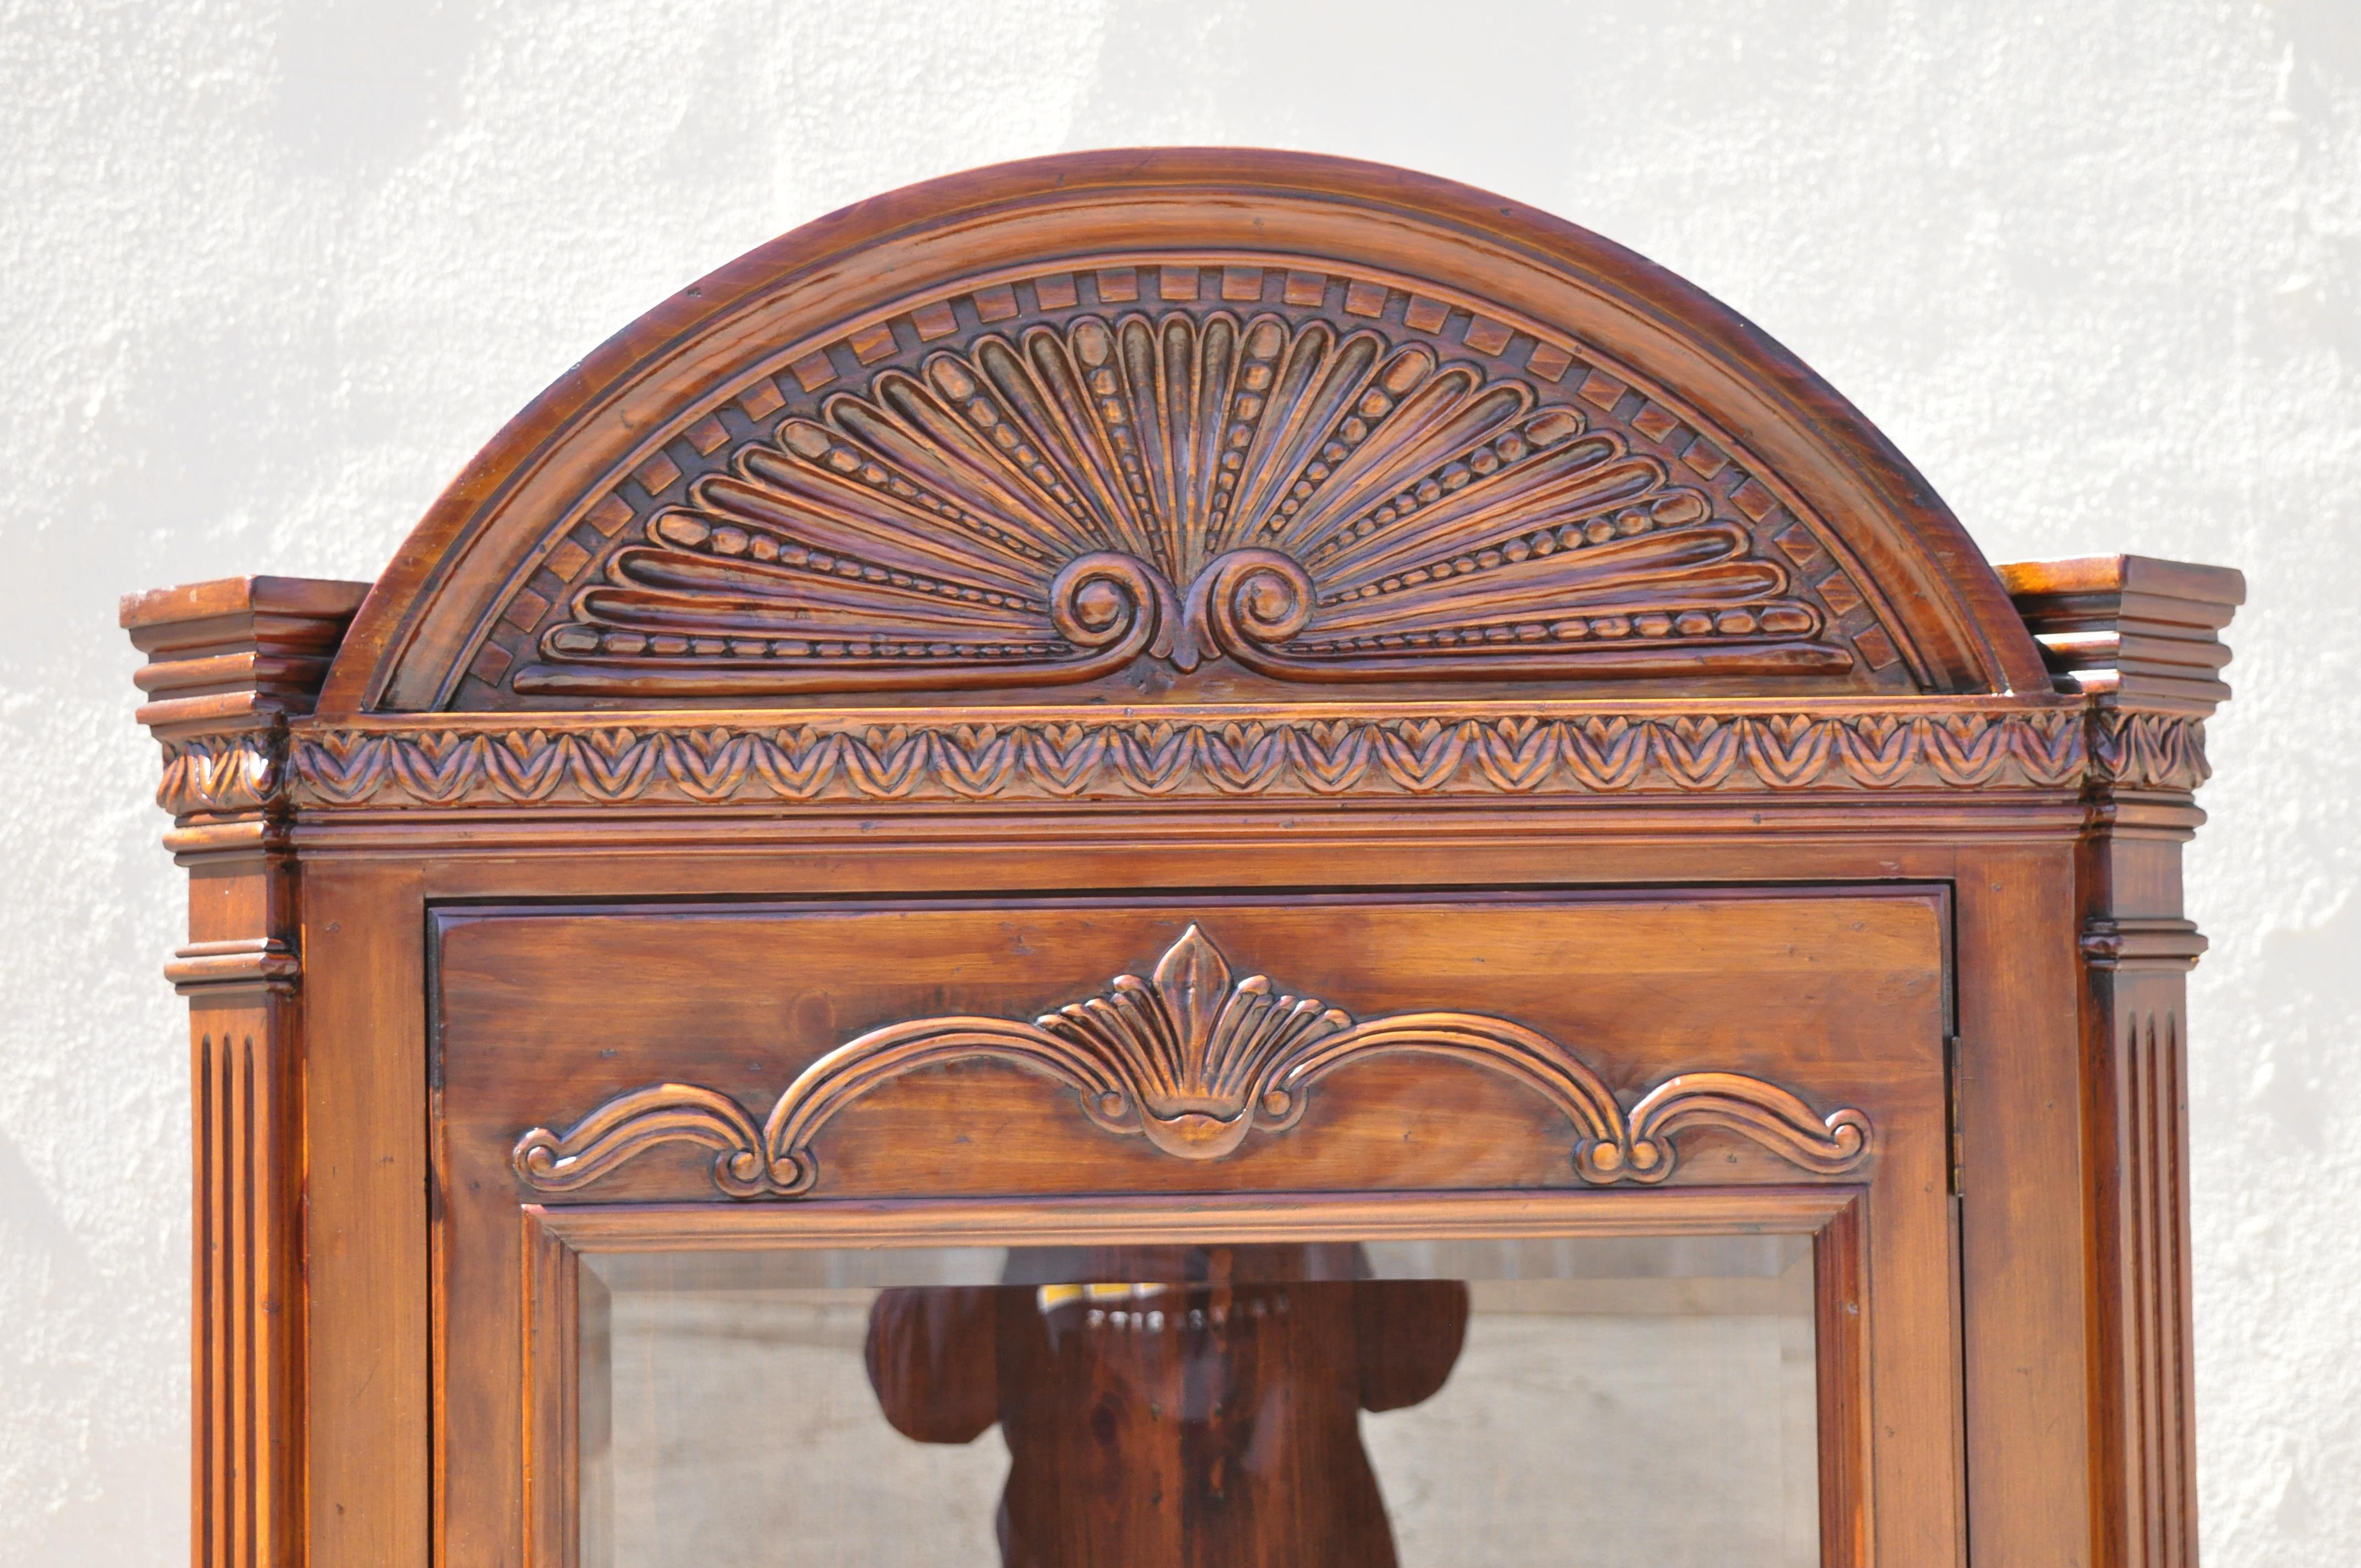 Reproduction d'une armoire d'angle en bois de pin sculpté en forme de coquillage de style Renaissance italienne. L'article présente une construction en bois massif, un beau grain de bois, des détails joliment sculptés, un intérieur éclairé, une